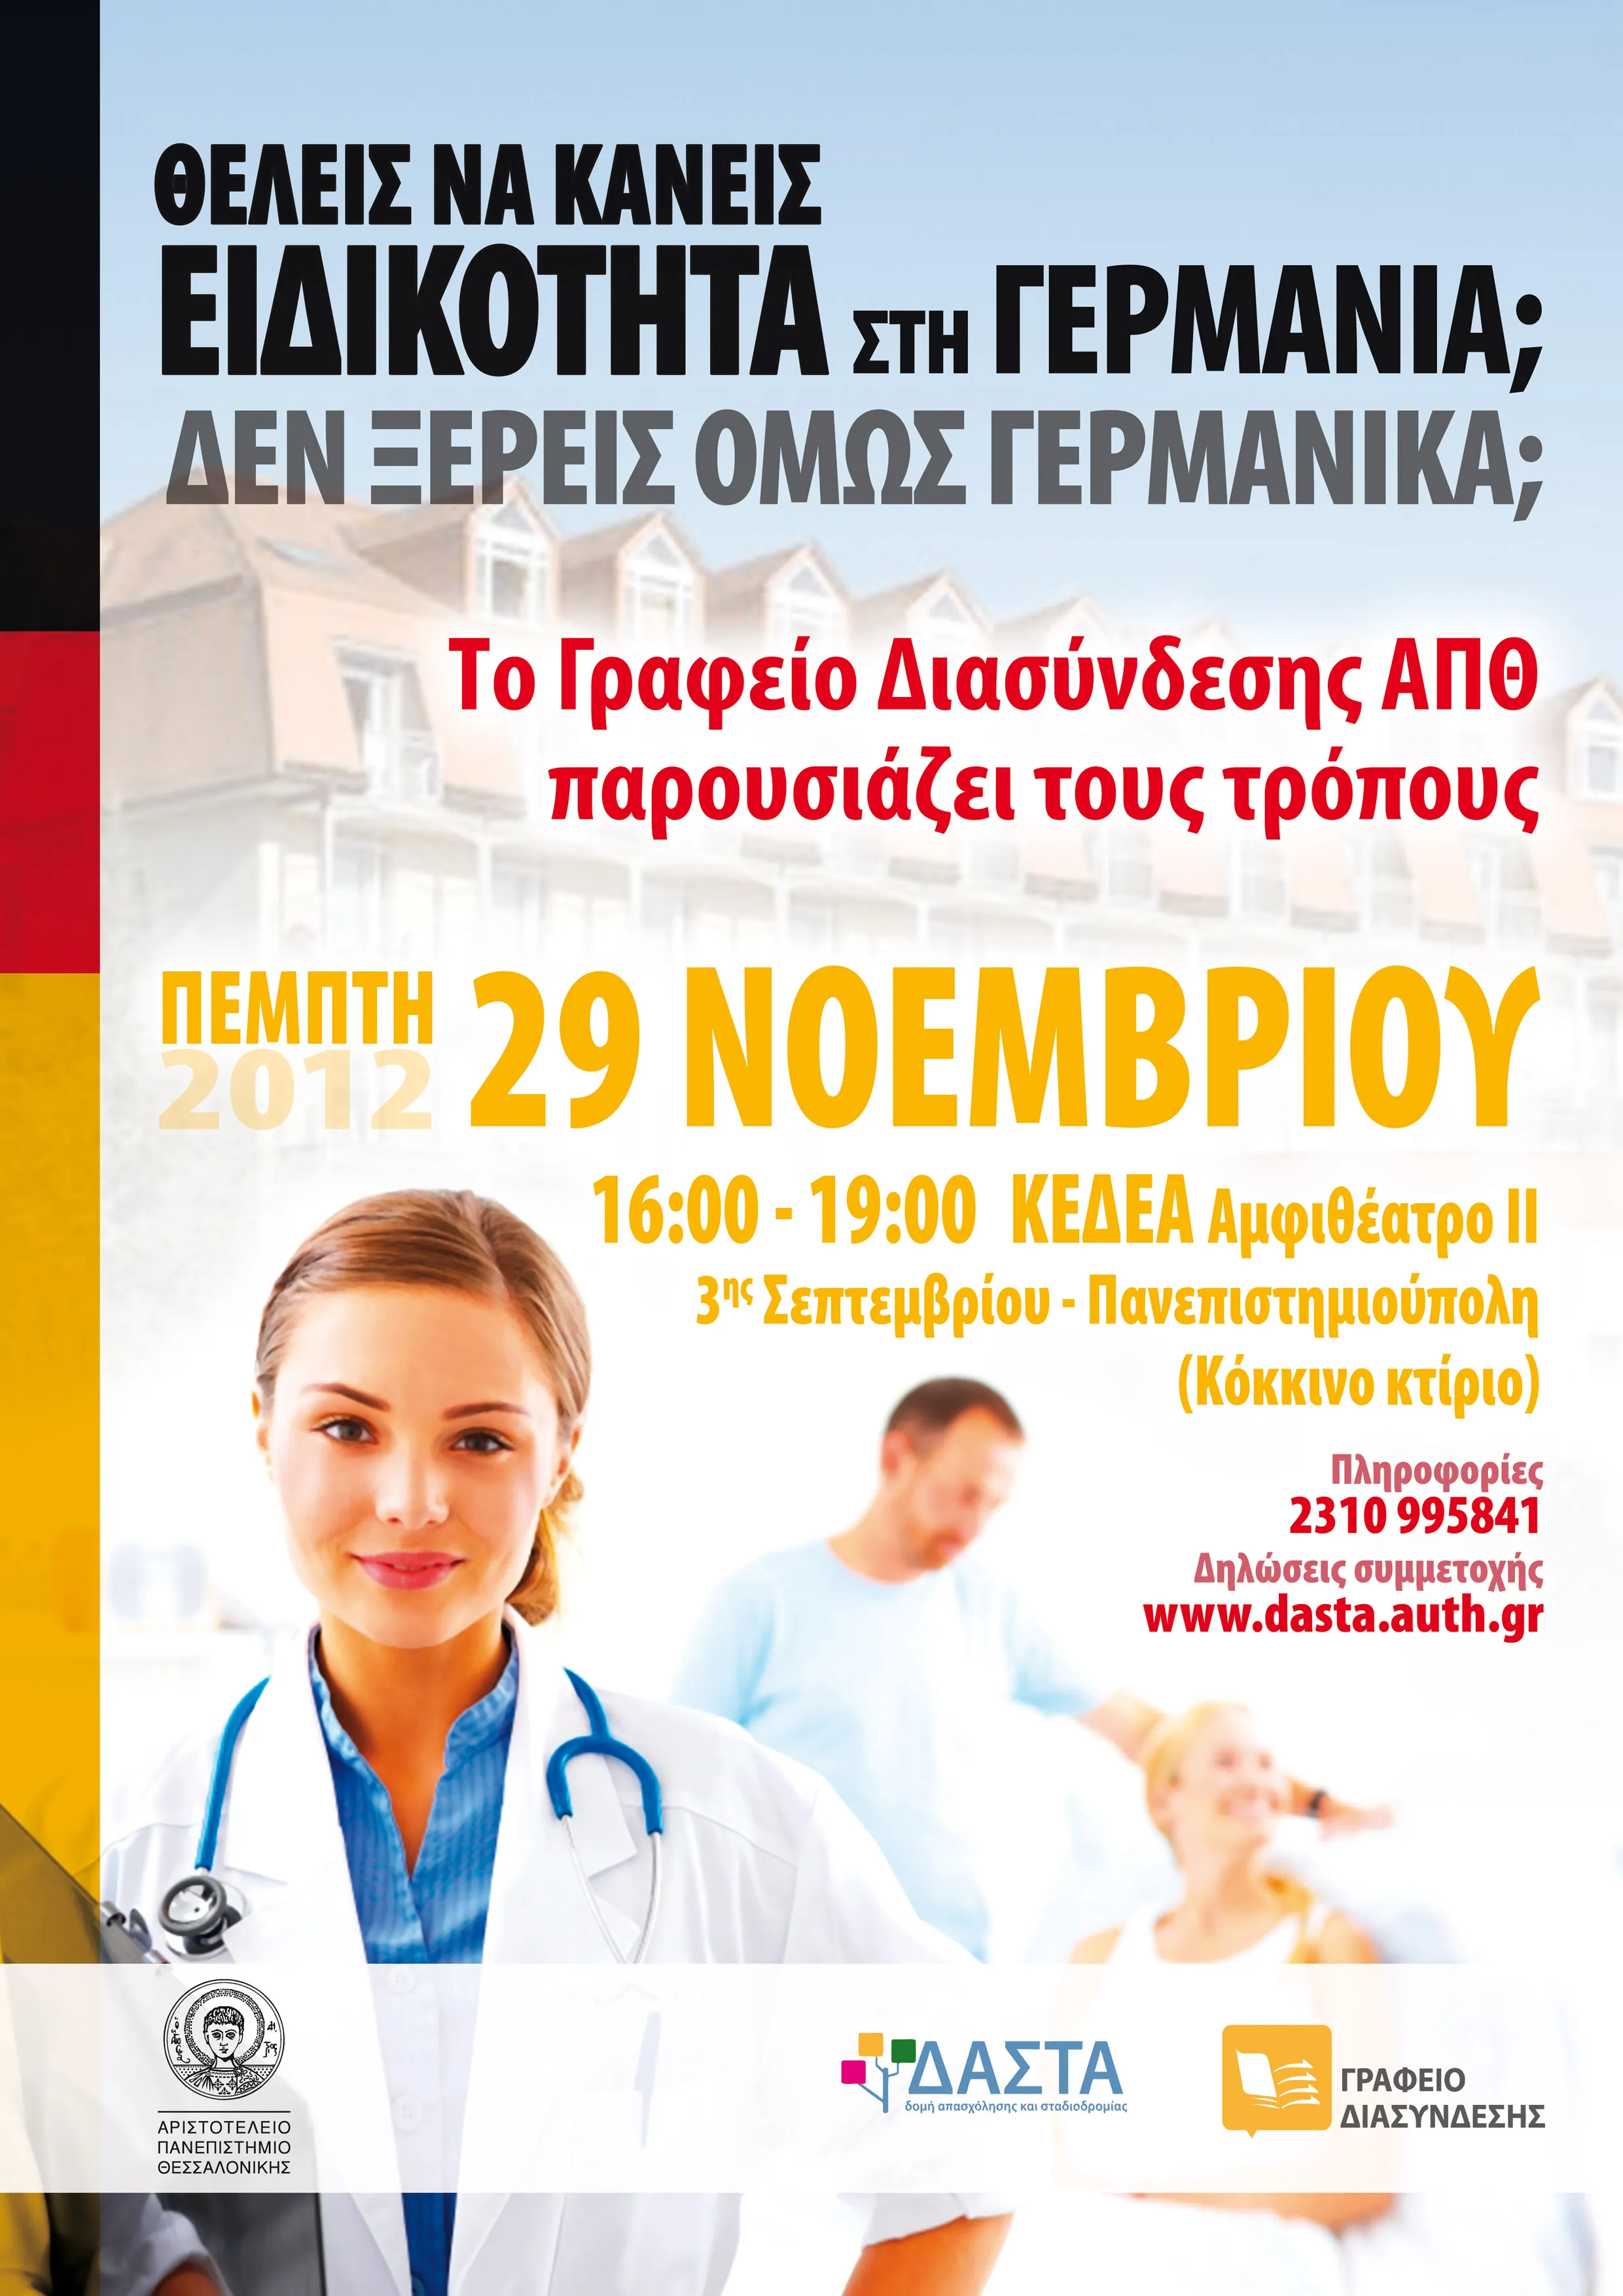 ΑΠΘ | Εκδήλωση με θέμα: "Ιατρική Ειδικότητα στη Γερμανία" στις 29/11